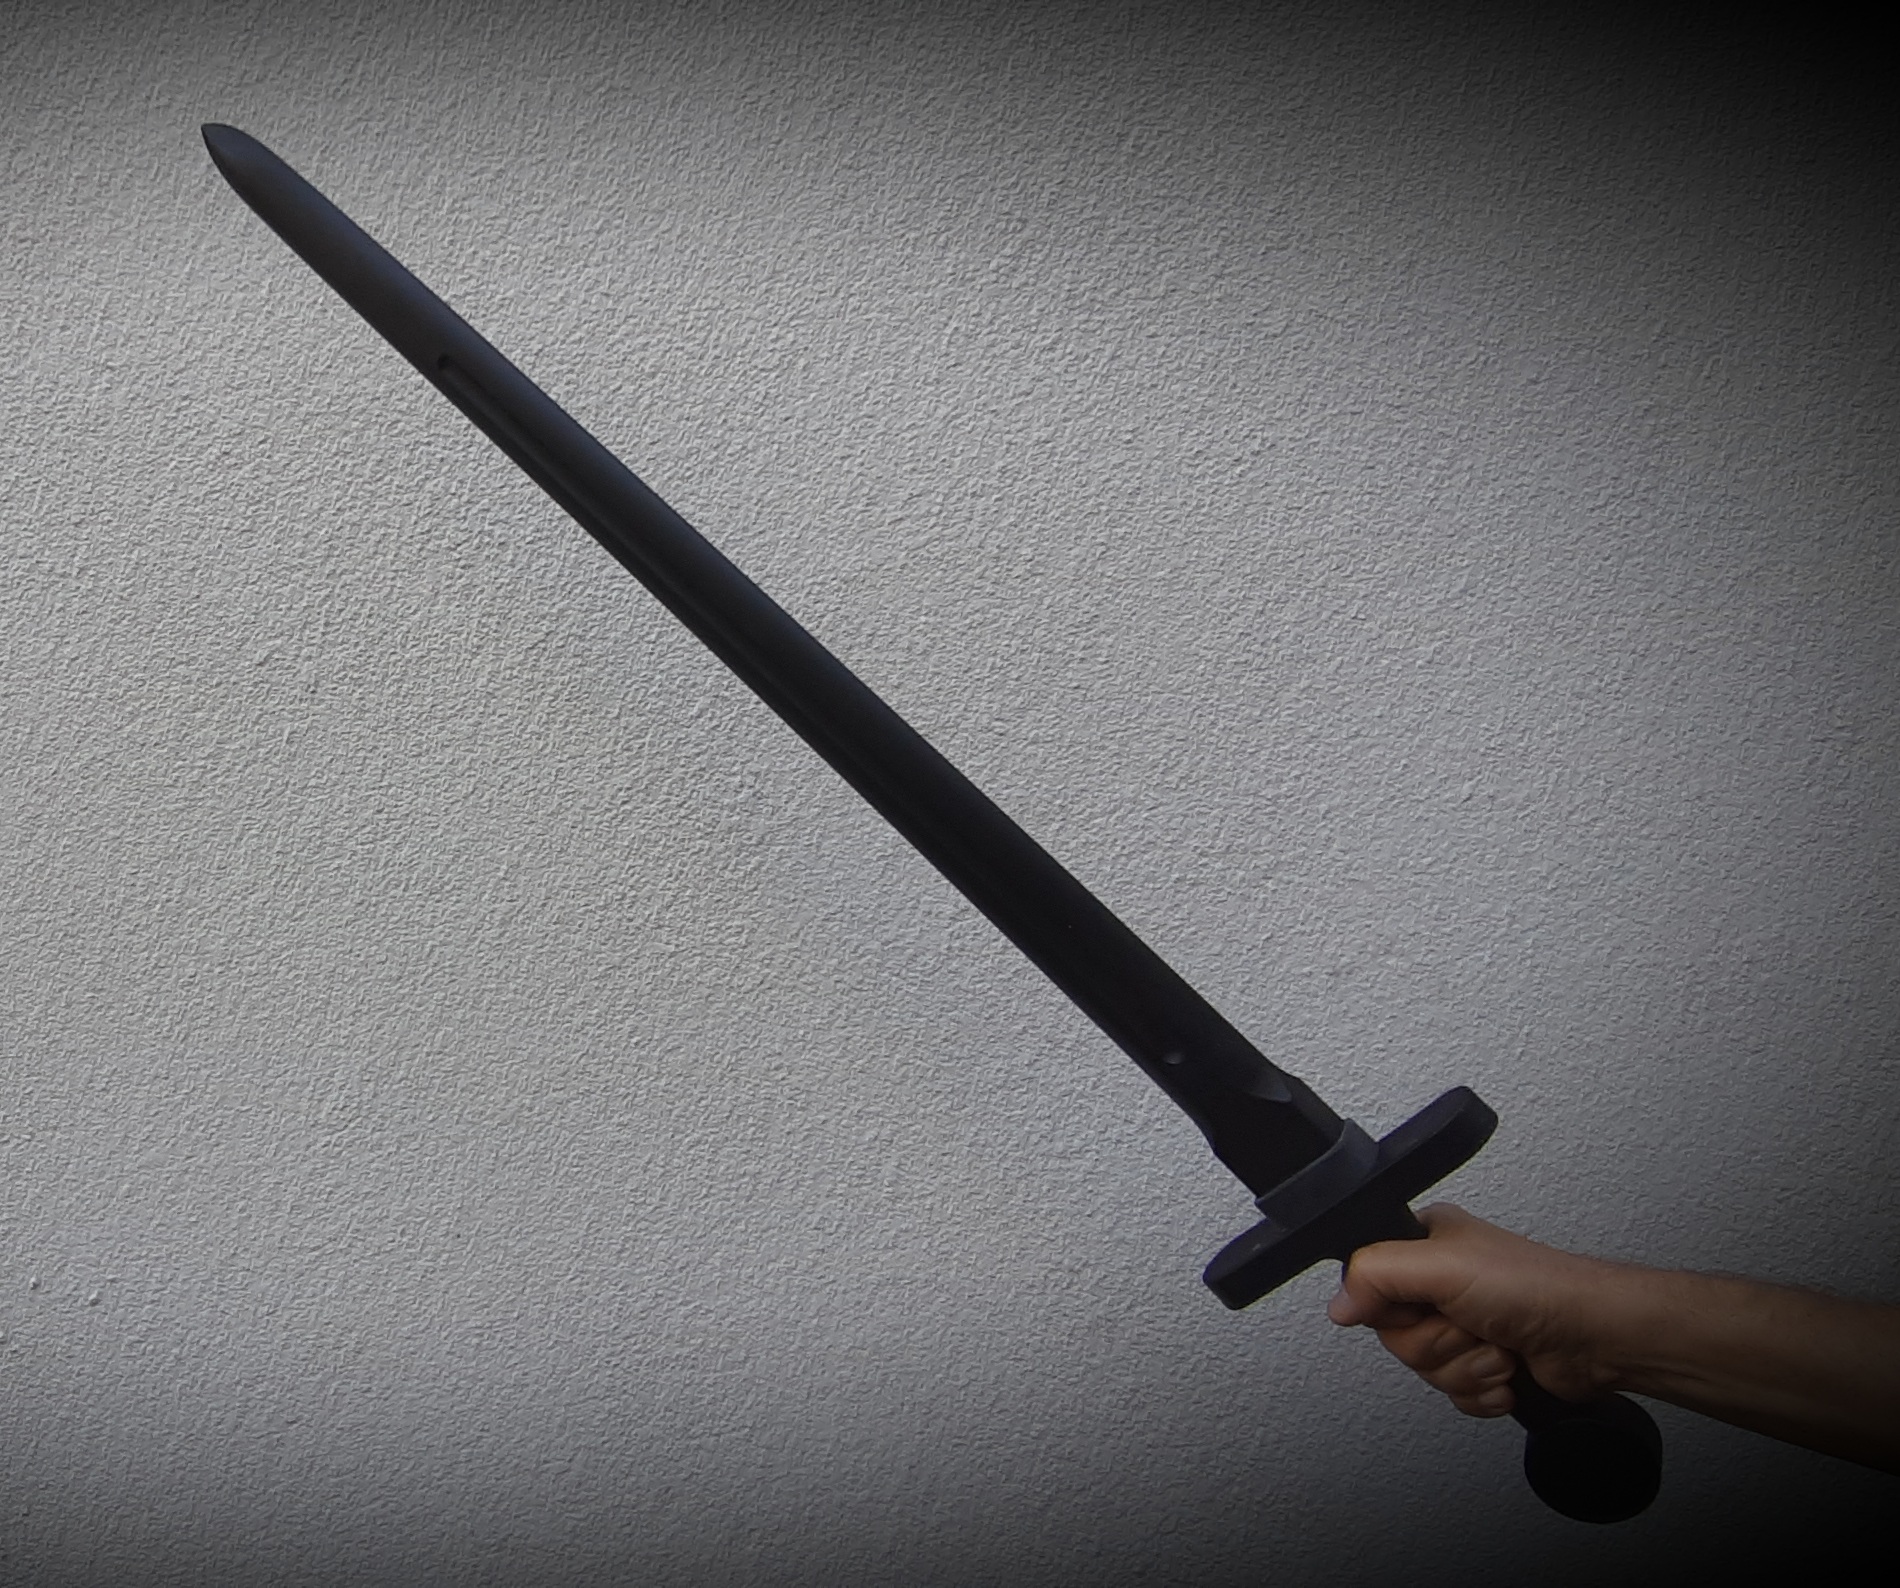 Mit Schwert gegen Tür gehämmert / Mit Messer und Holzlatte in Wohnung gestürmt